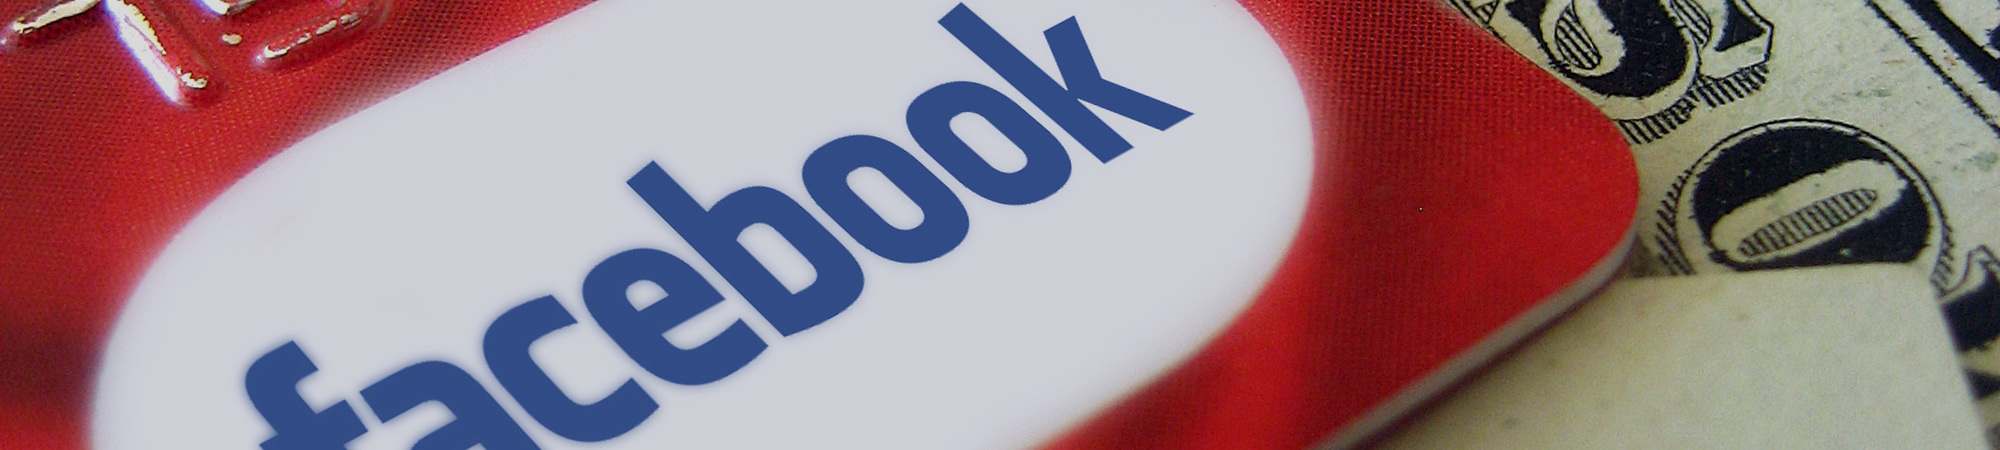 Facebook: Peer- to- Peer Payments